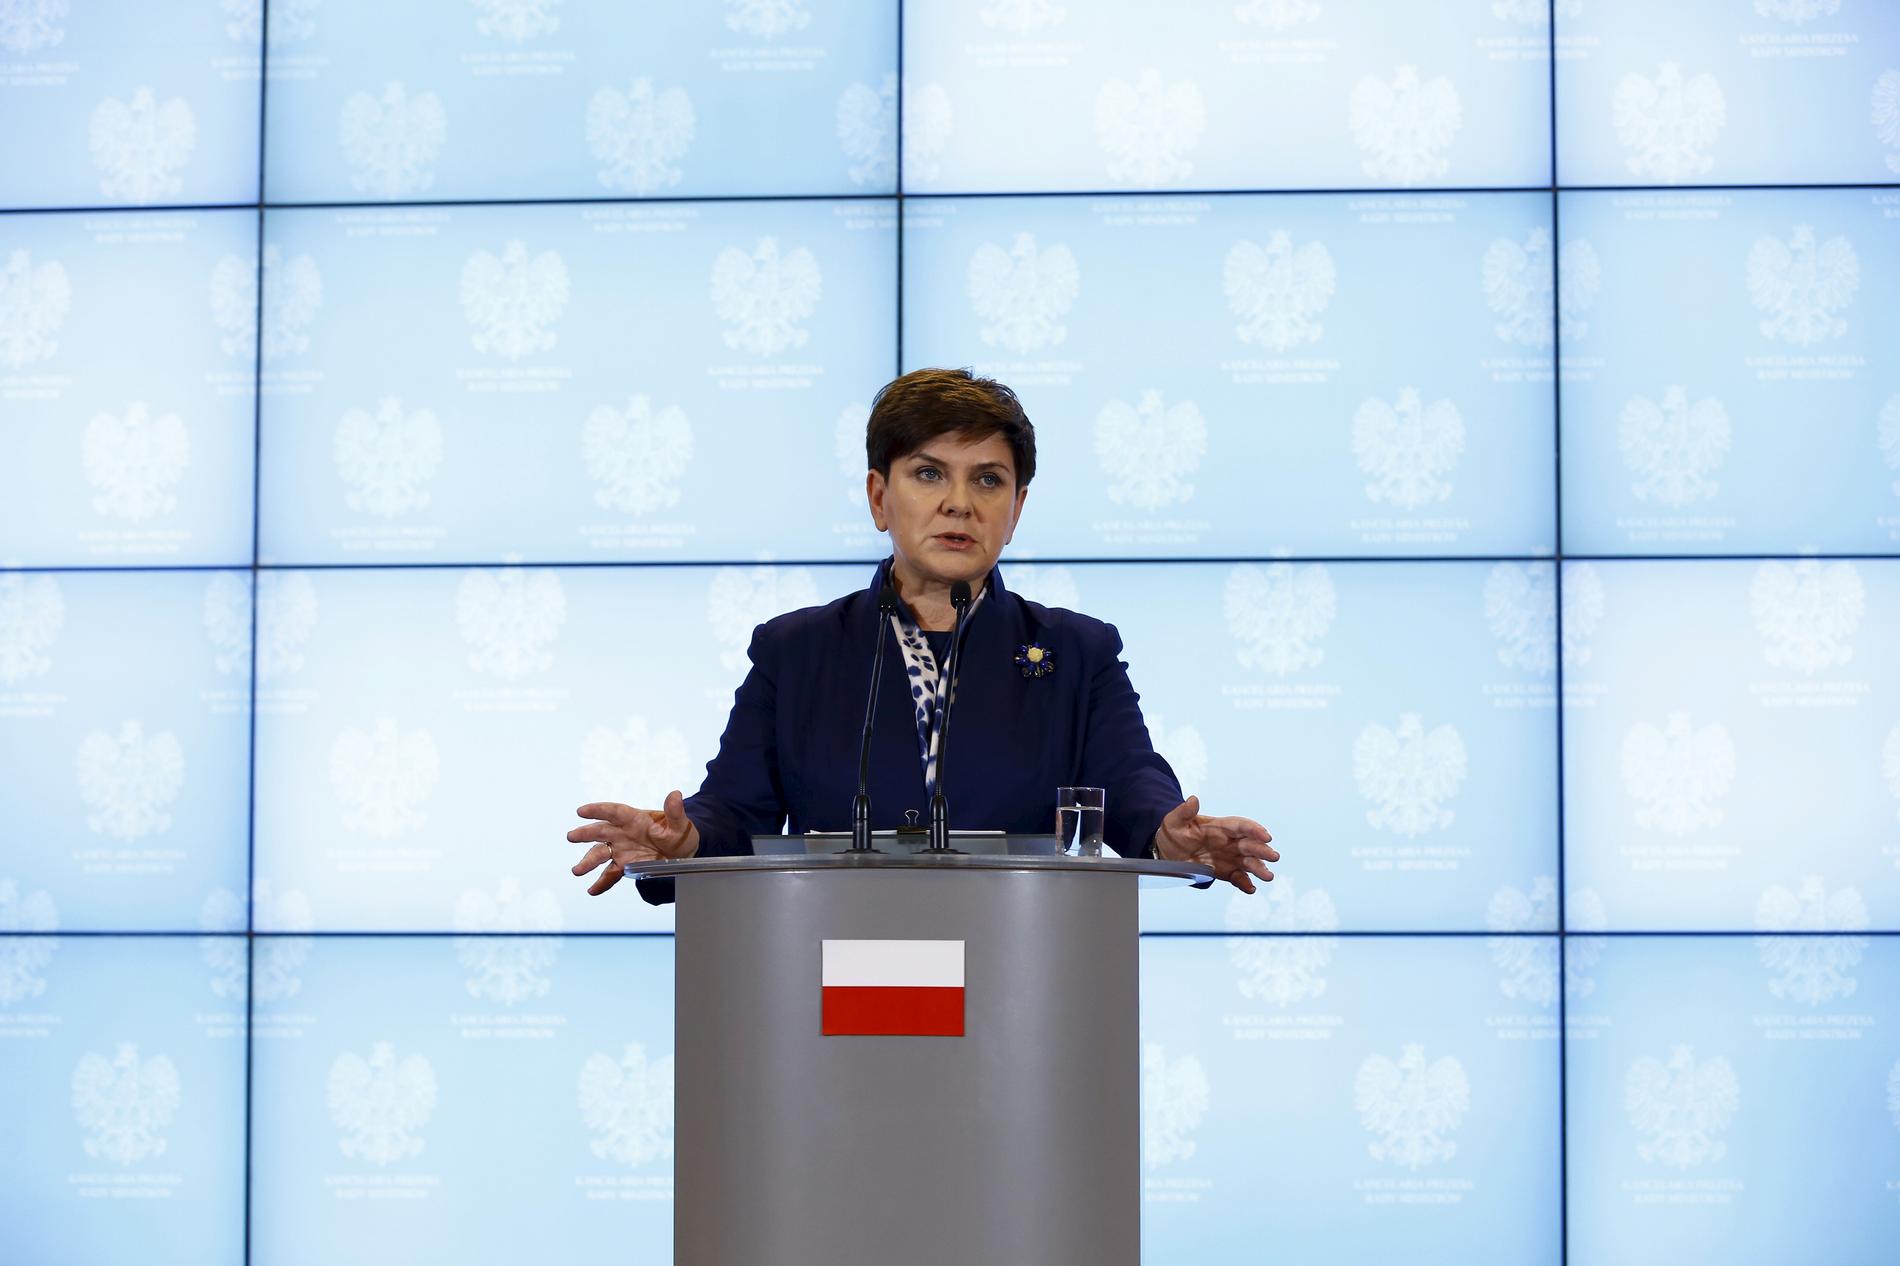 "Den kultur som bekostas med offentliga medel ska vara patriotisk och berätta för världen om polska hjältar", sade Polens premiärminister Beata Szydlo i sitt installationstal.